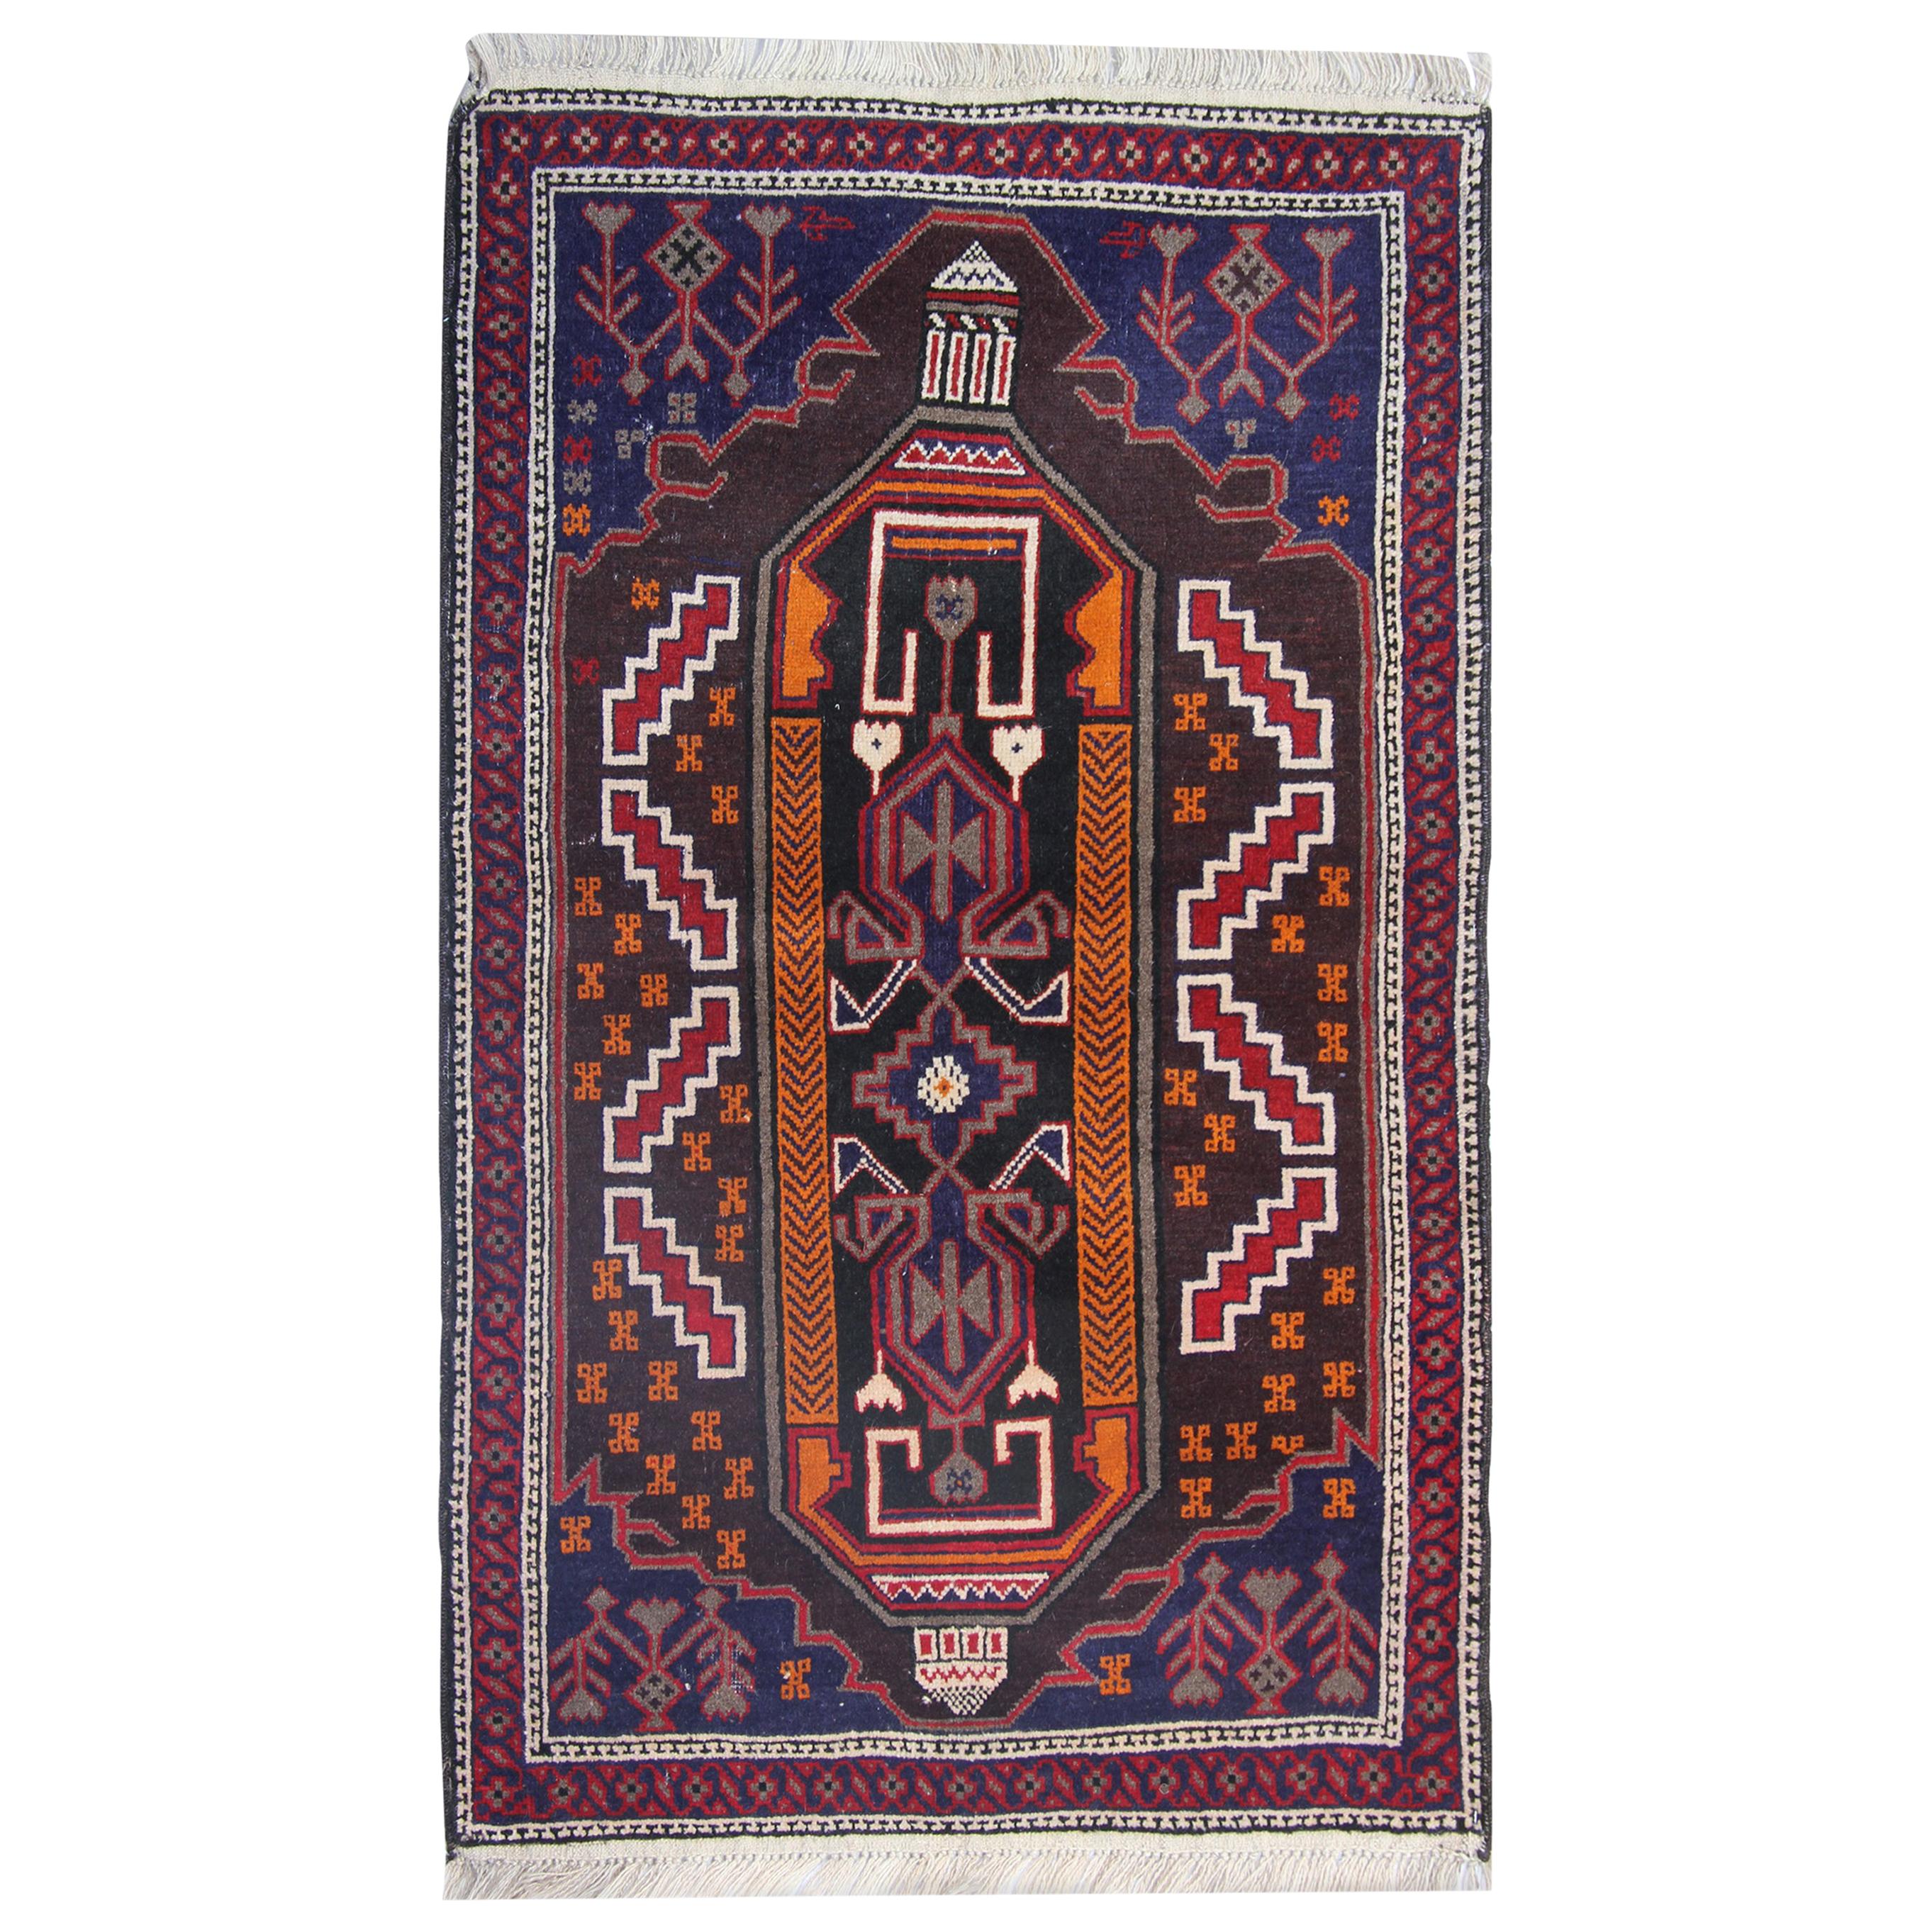 Handgefertigter orientalischer Teppich, traditioneller rustikaler Teppich, Stammeskunst